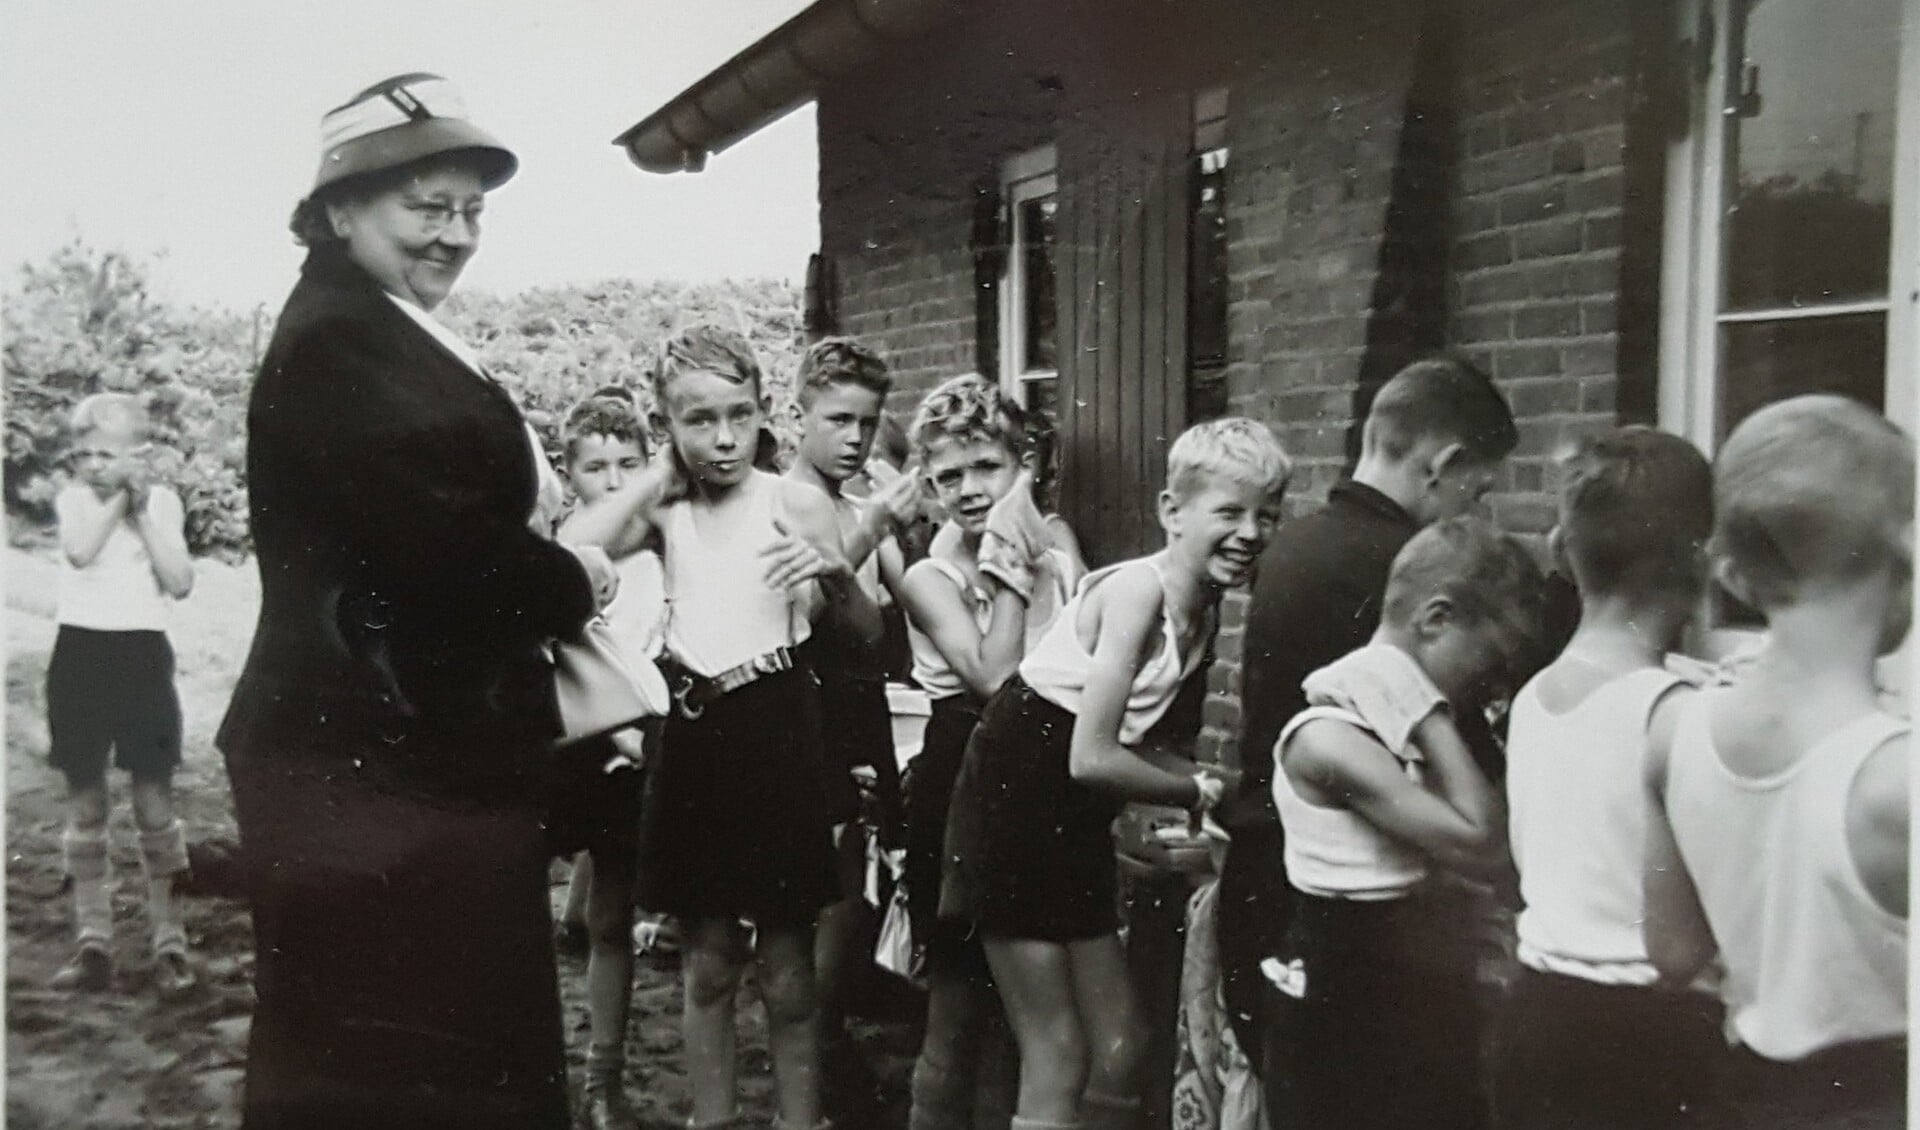 De moeder van juffrouw Toos bezoekt het eerste scoutingkamp (Berg en Dal 1958).